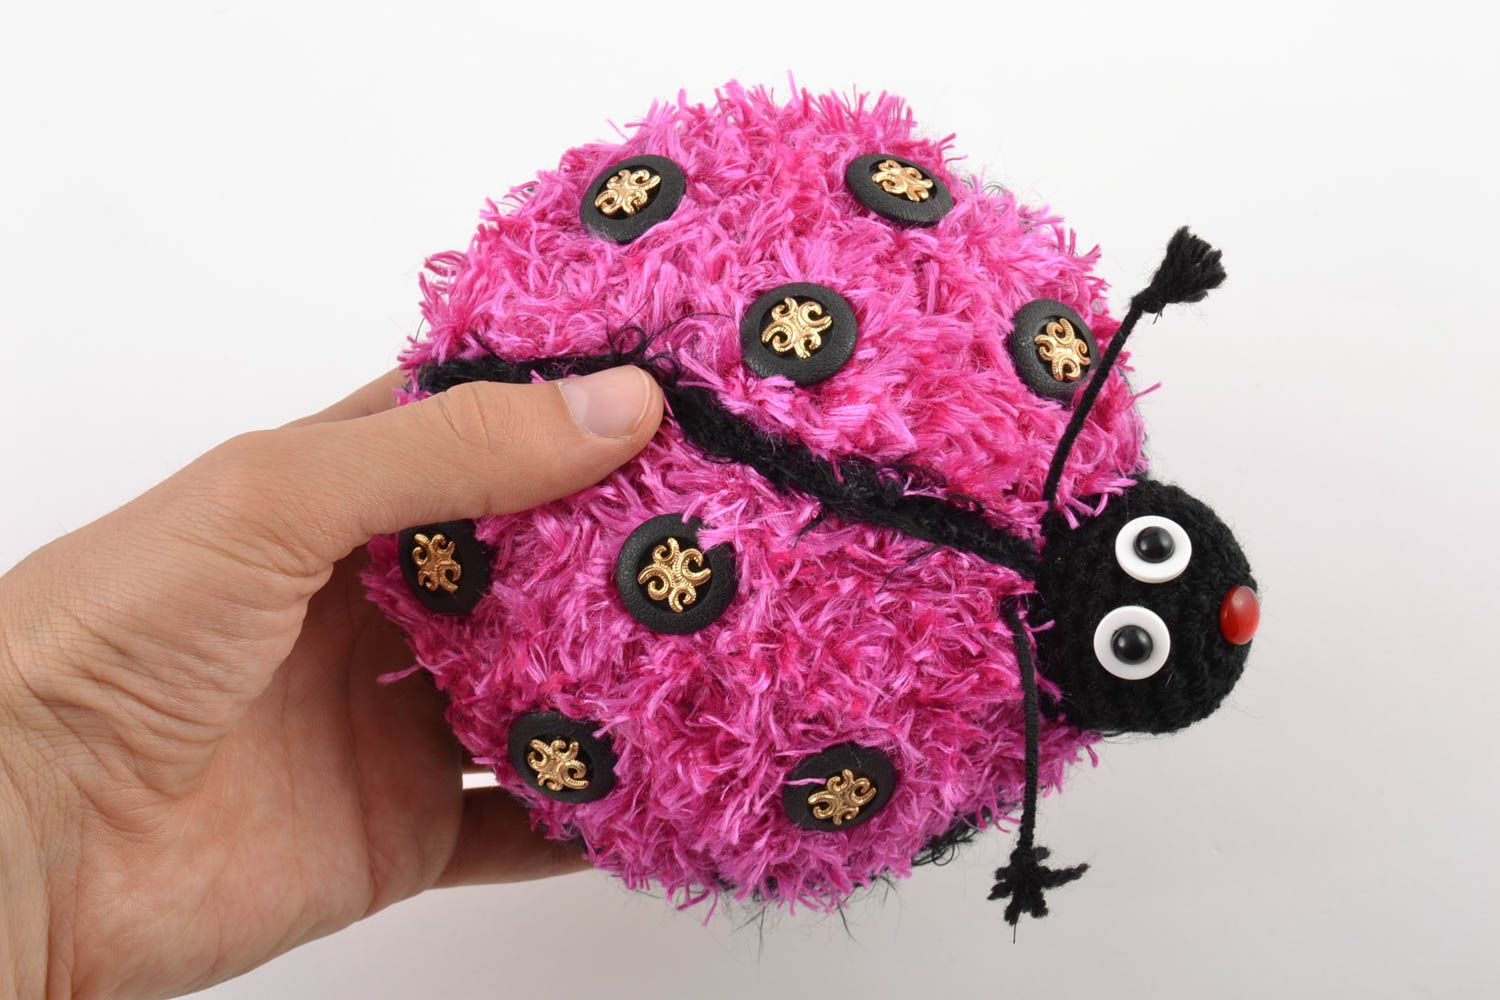 Мягкая вязаная игрушка в технике амигуруми розовая в виде божьей коровки хенд мейд фото 2